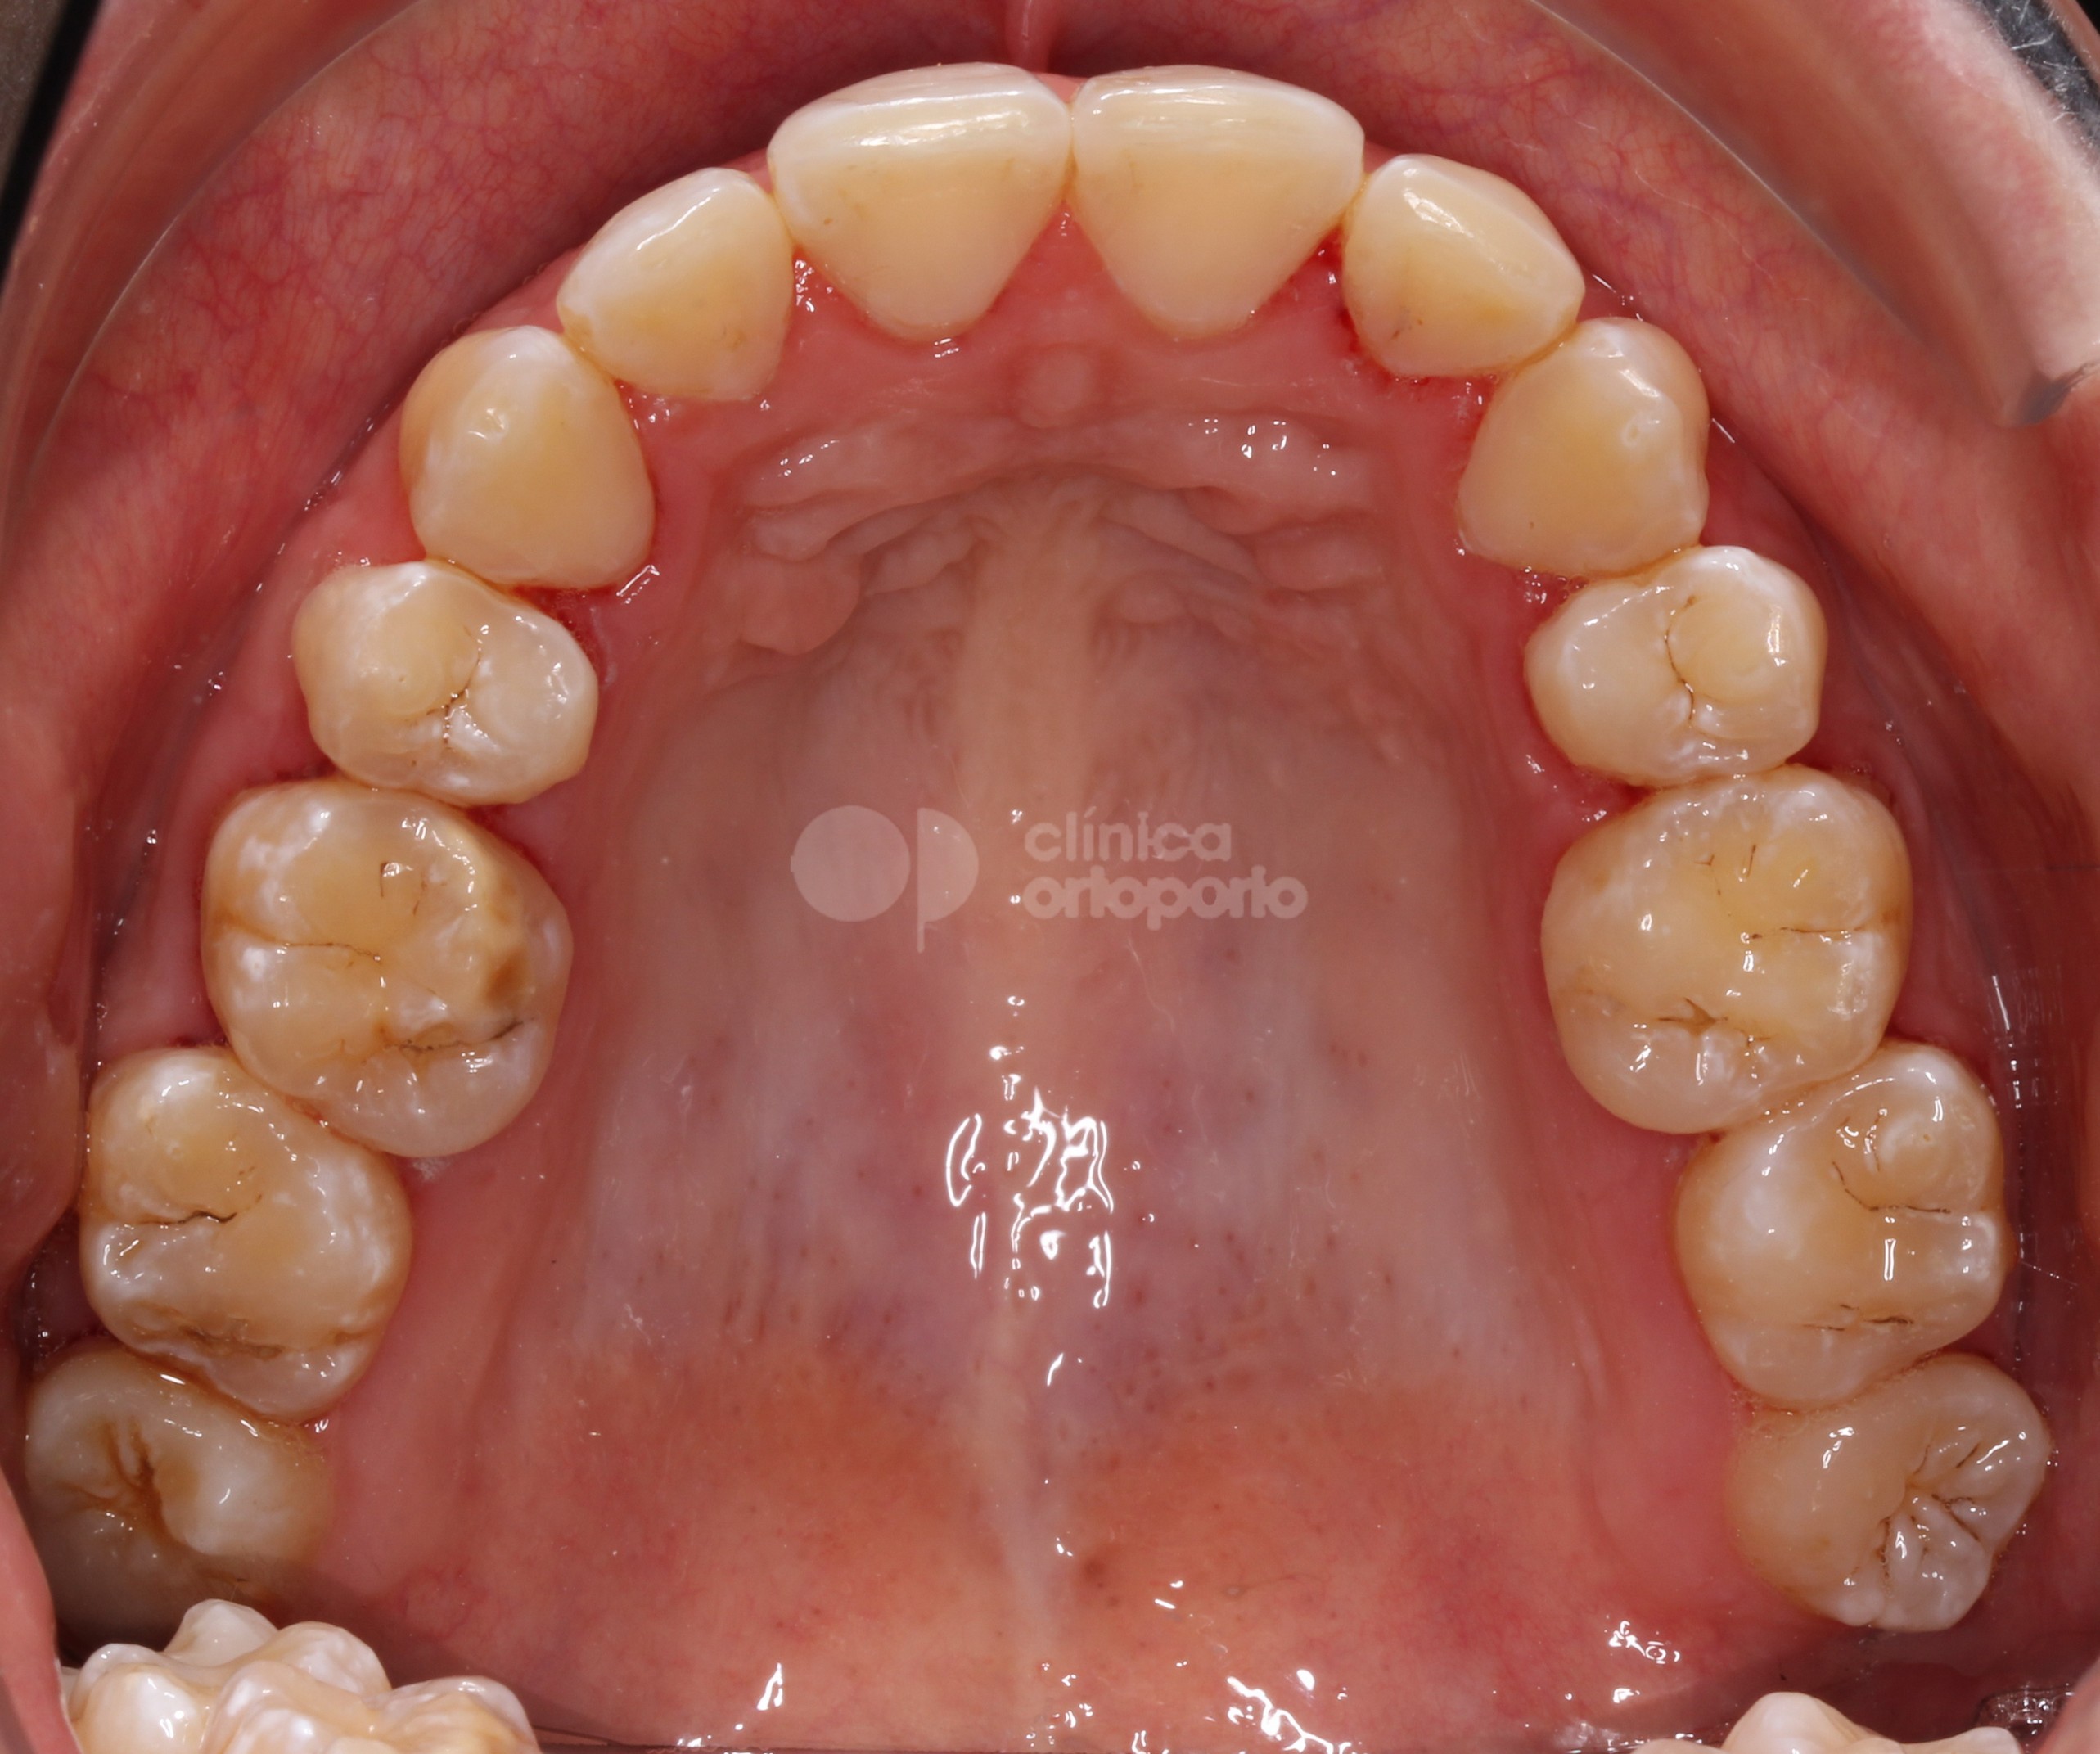 Ortodoncia lingual+Injerto de encía para solucionar un caso grave de retracción de encías (recesiones gingivales).|Clínica Dental Ortoperio